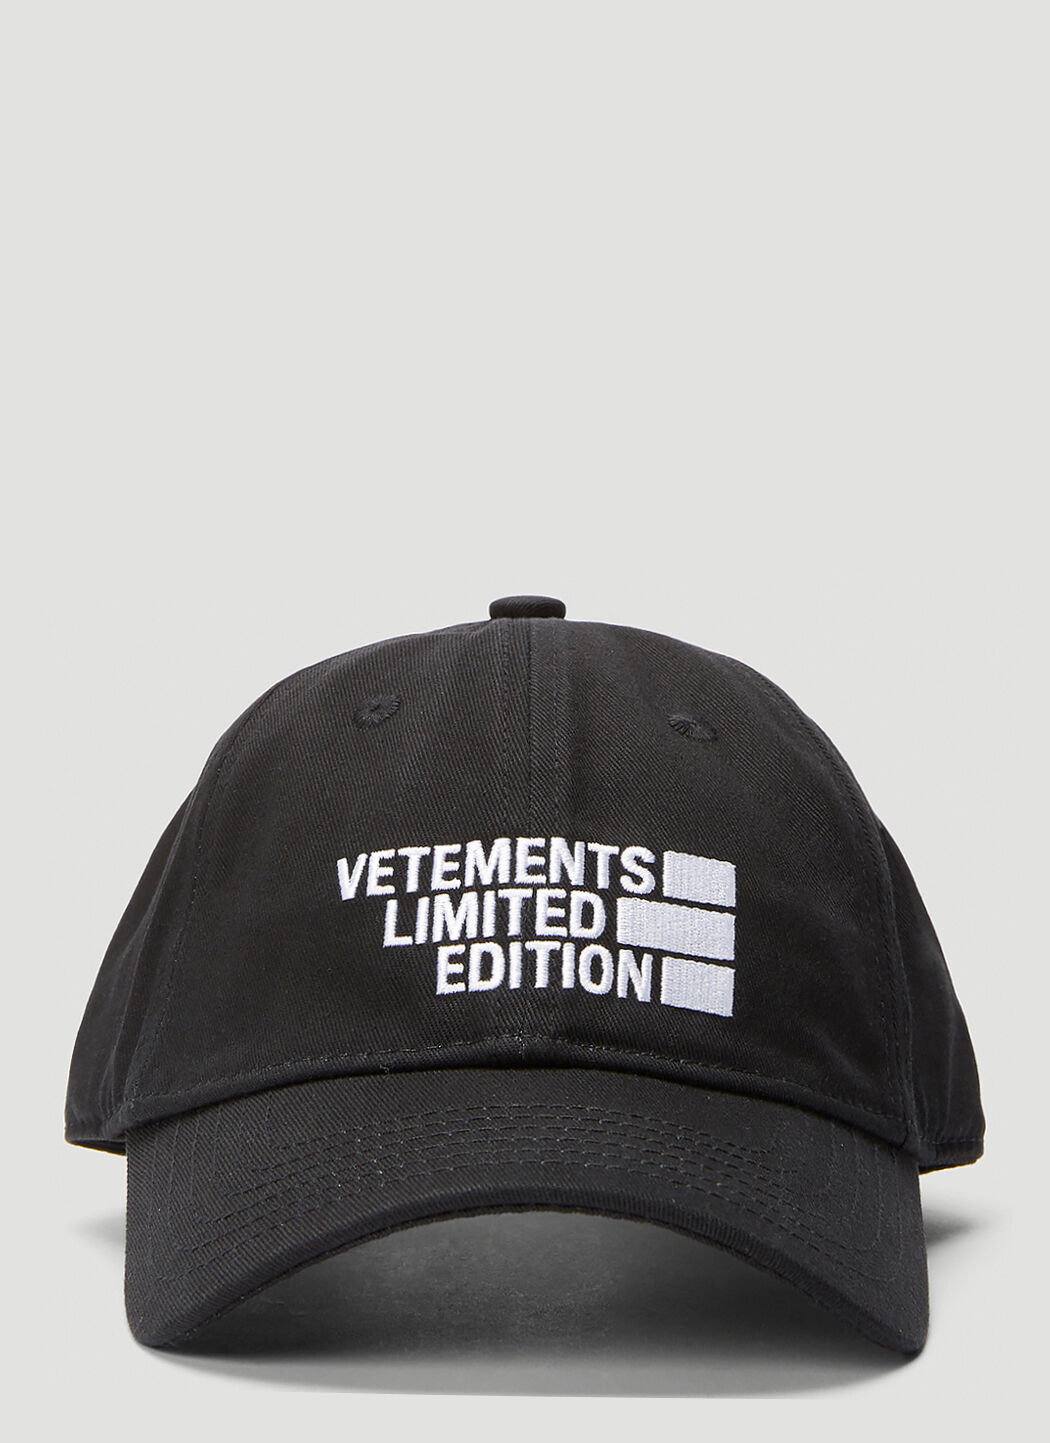 新作登場限定SALEVETEMENTS logo cap limited edition 帽子